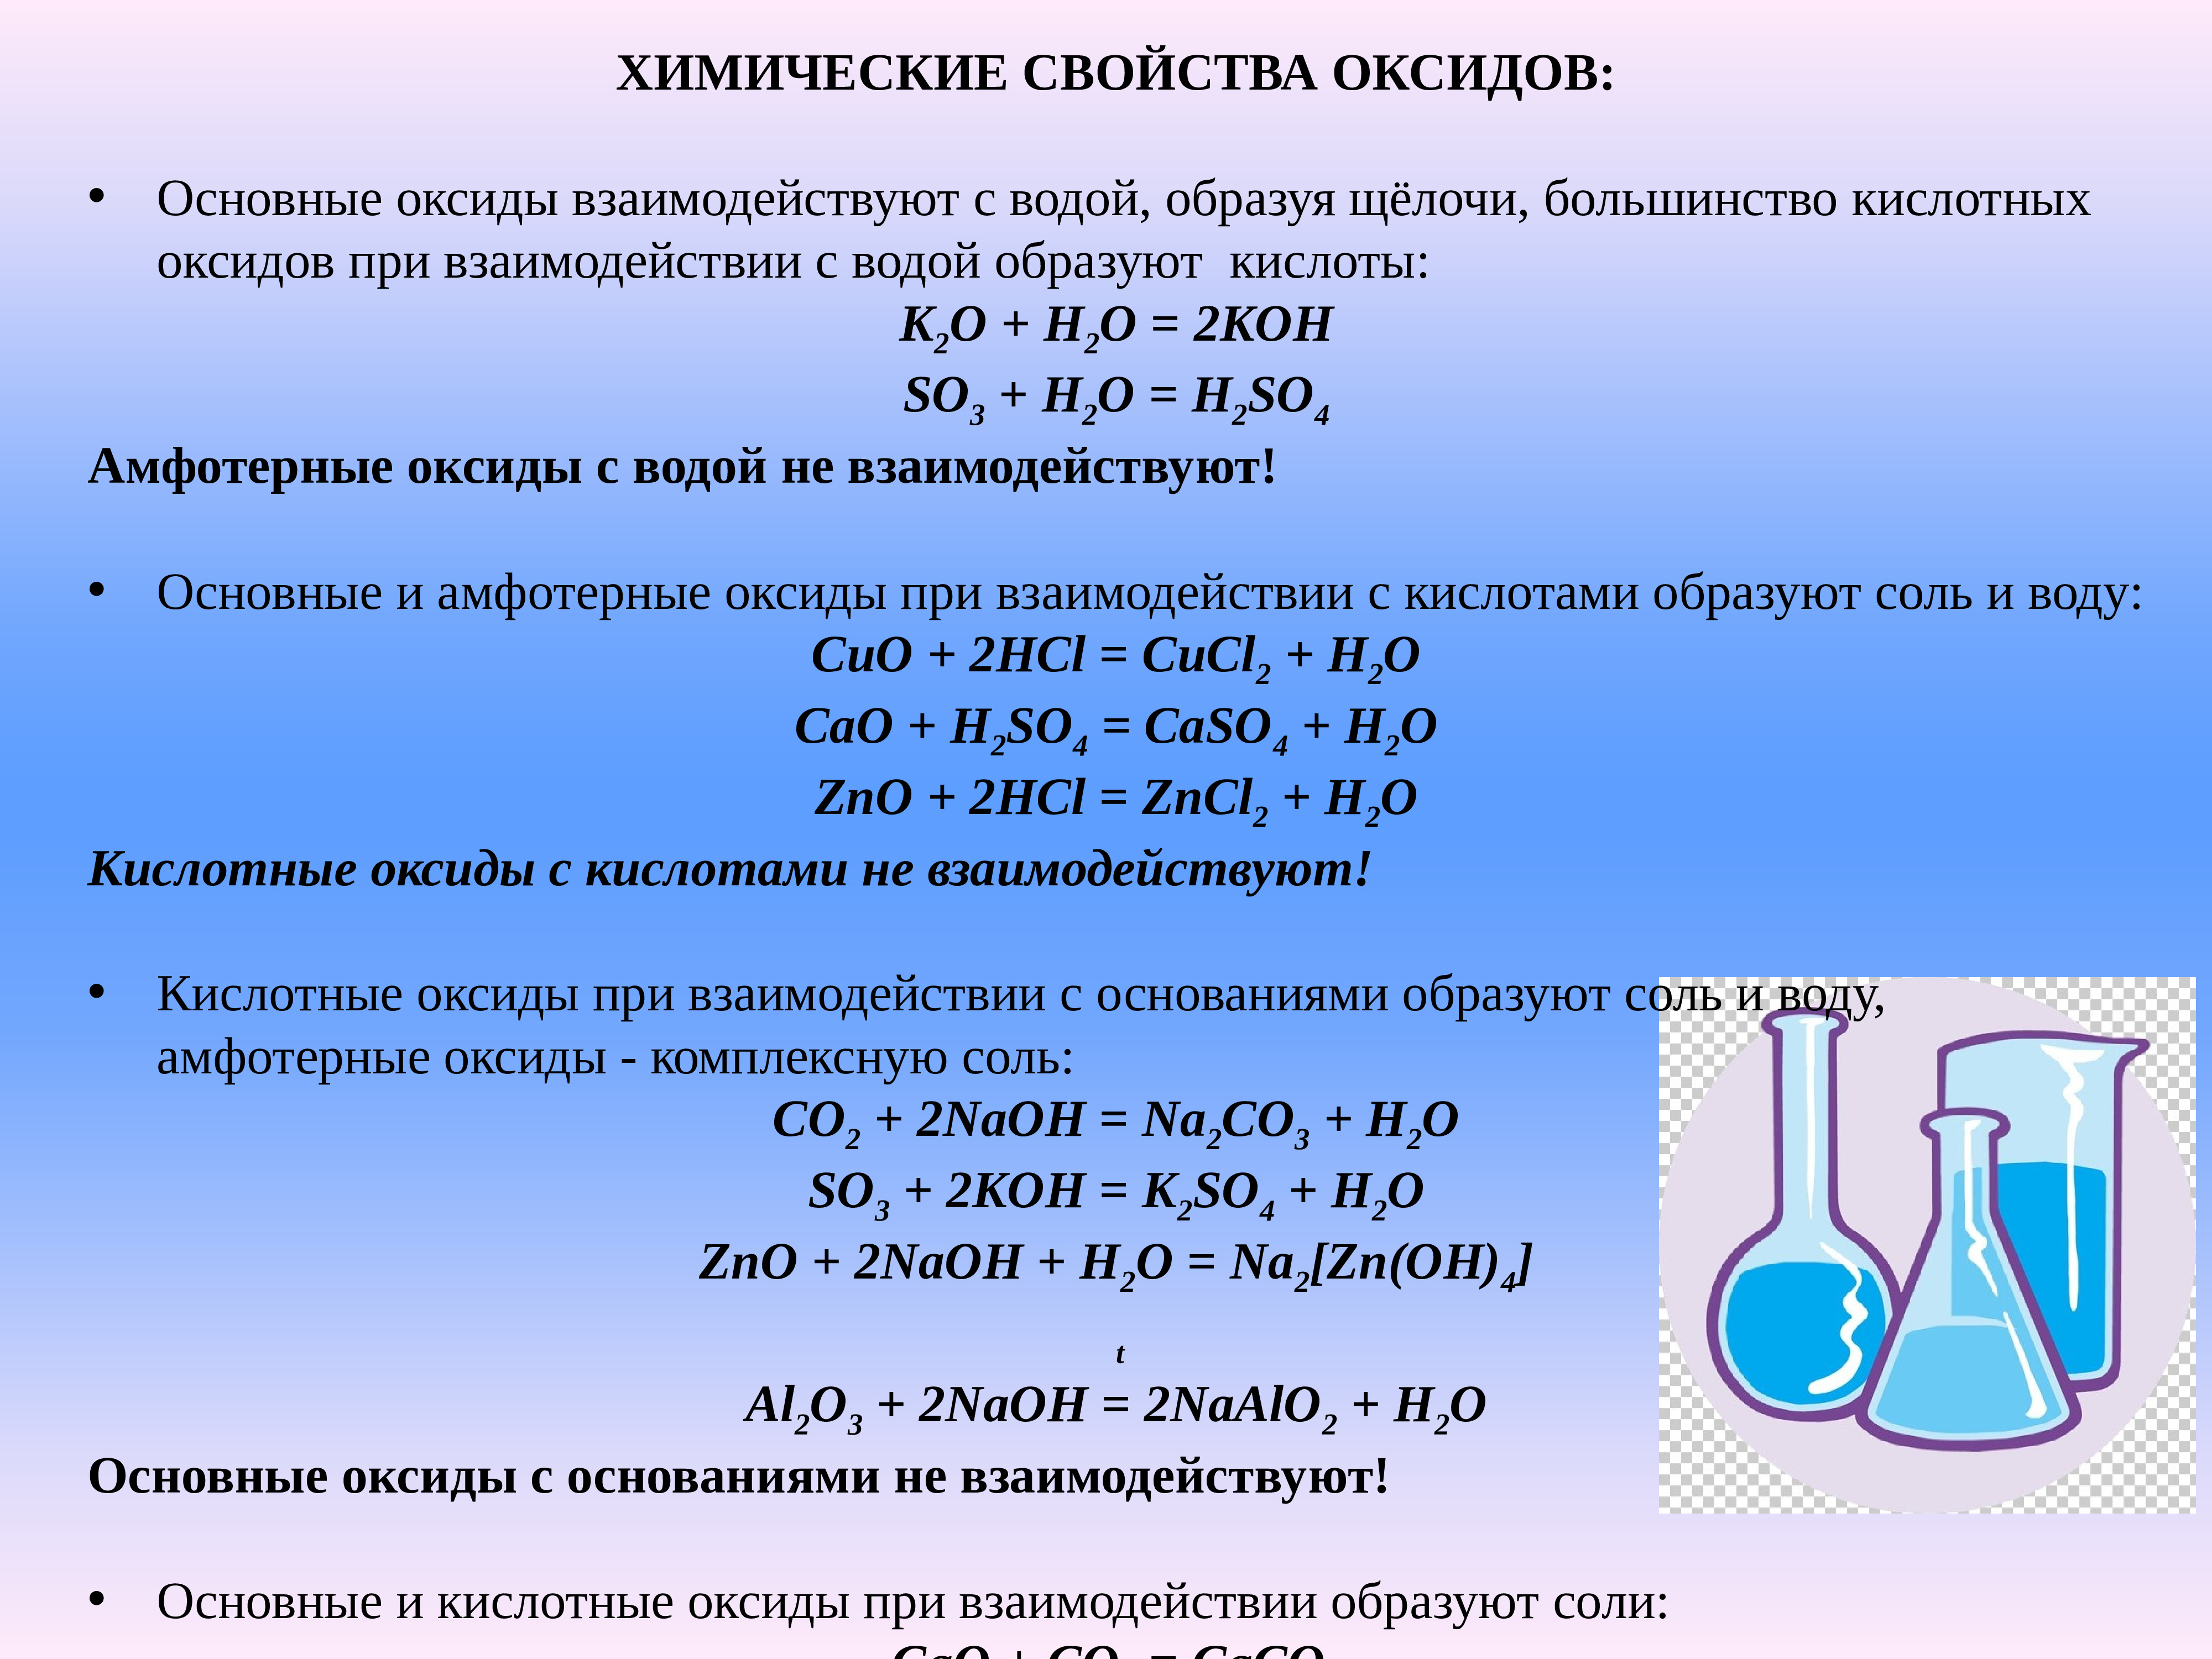 K2so4 класс неорганических соединений. Основные классы неорганических соединений презентация. Схема взаимодействия неорганических веществ. Классы неорганических соединений презентация. Номенклатура классов неорганических веществ.